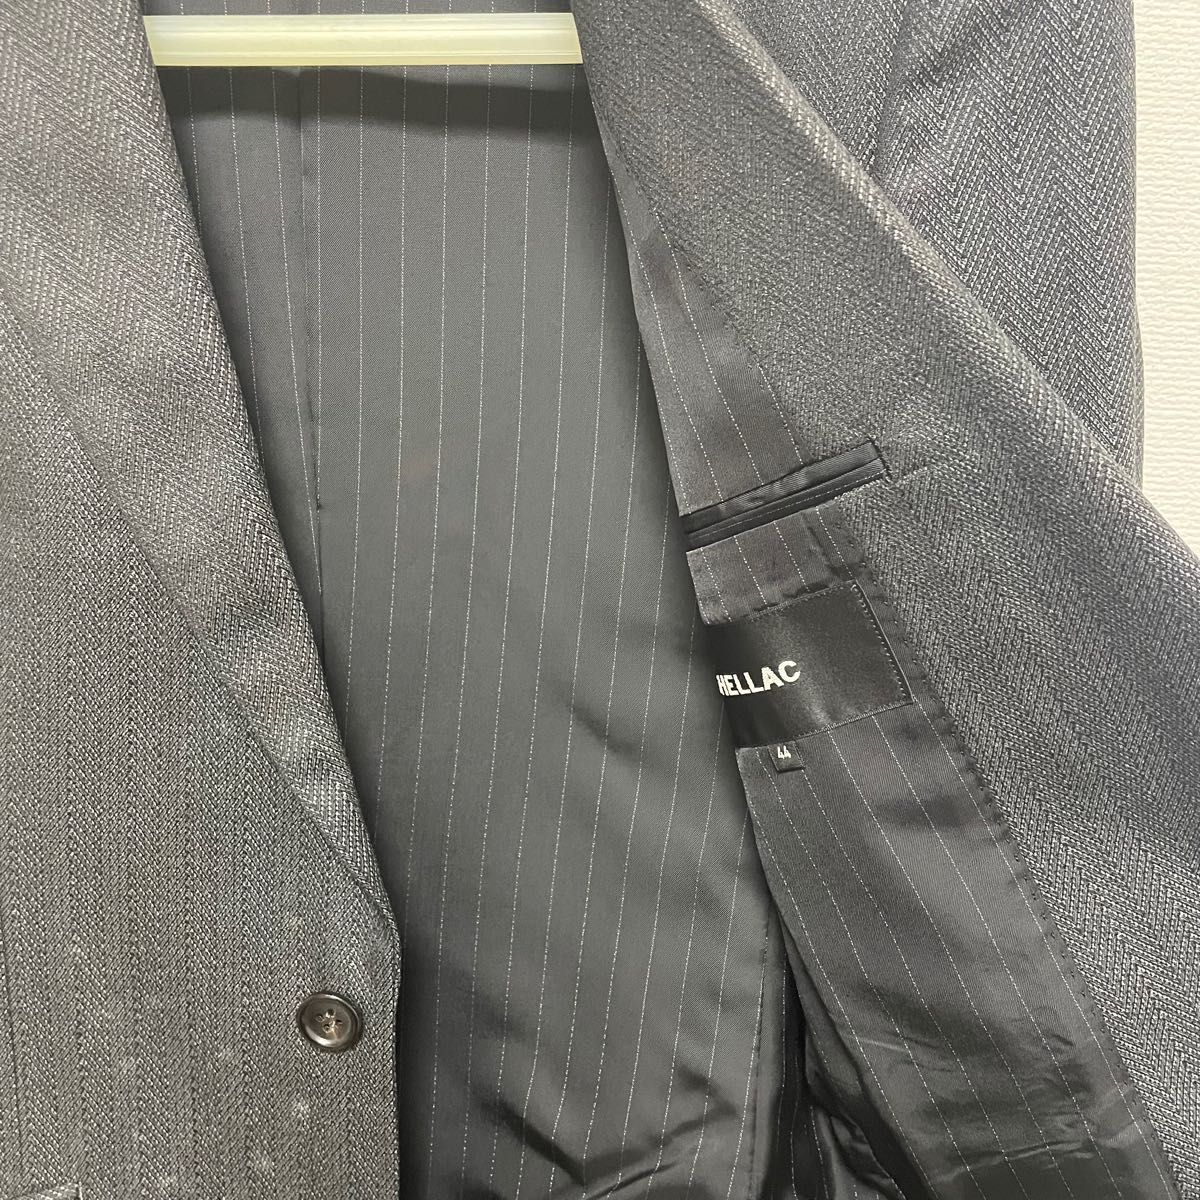 SHELLAC シェラック メンズ スーツ セットアップ ヘリンボーン ダークグレー シルク混 カシミヤ混 ウール混 Sサイズ